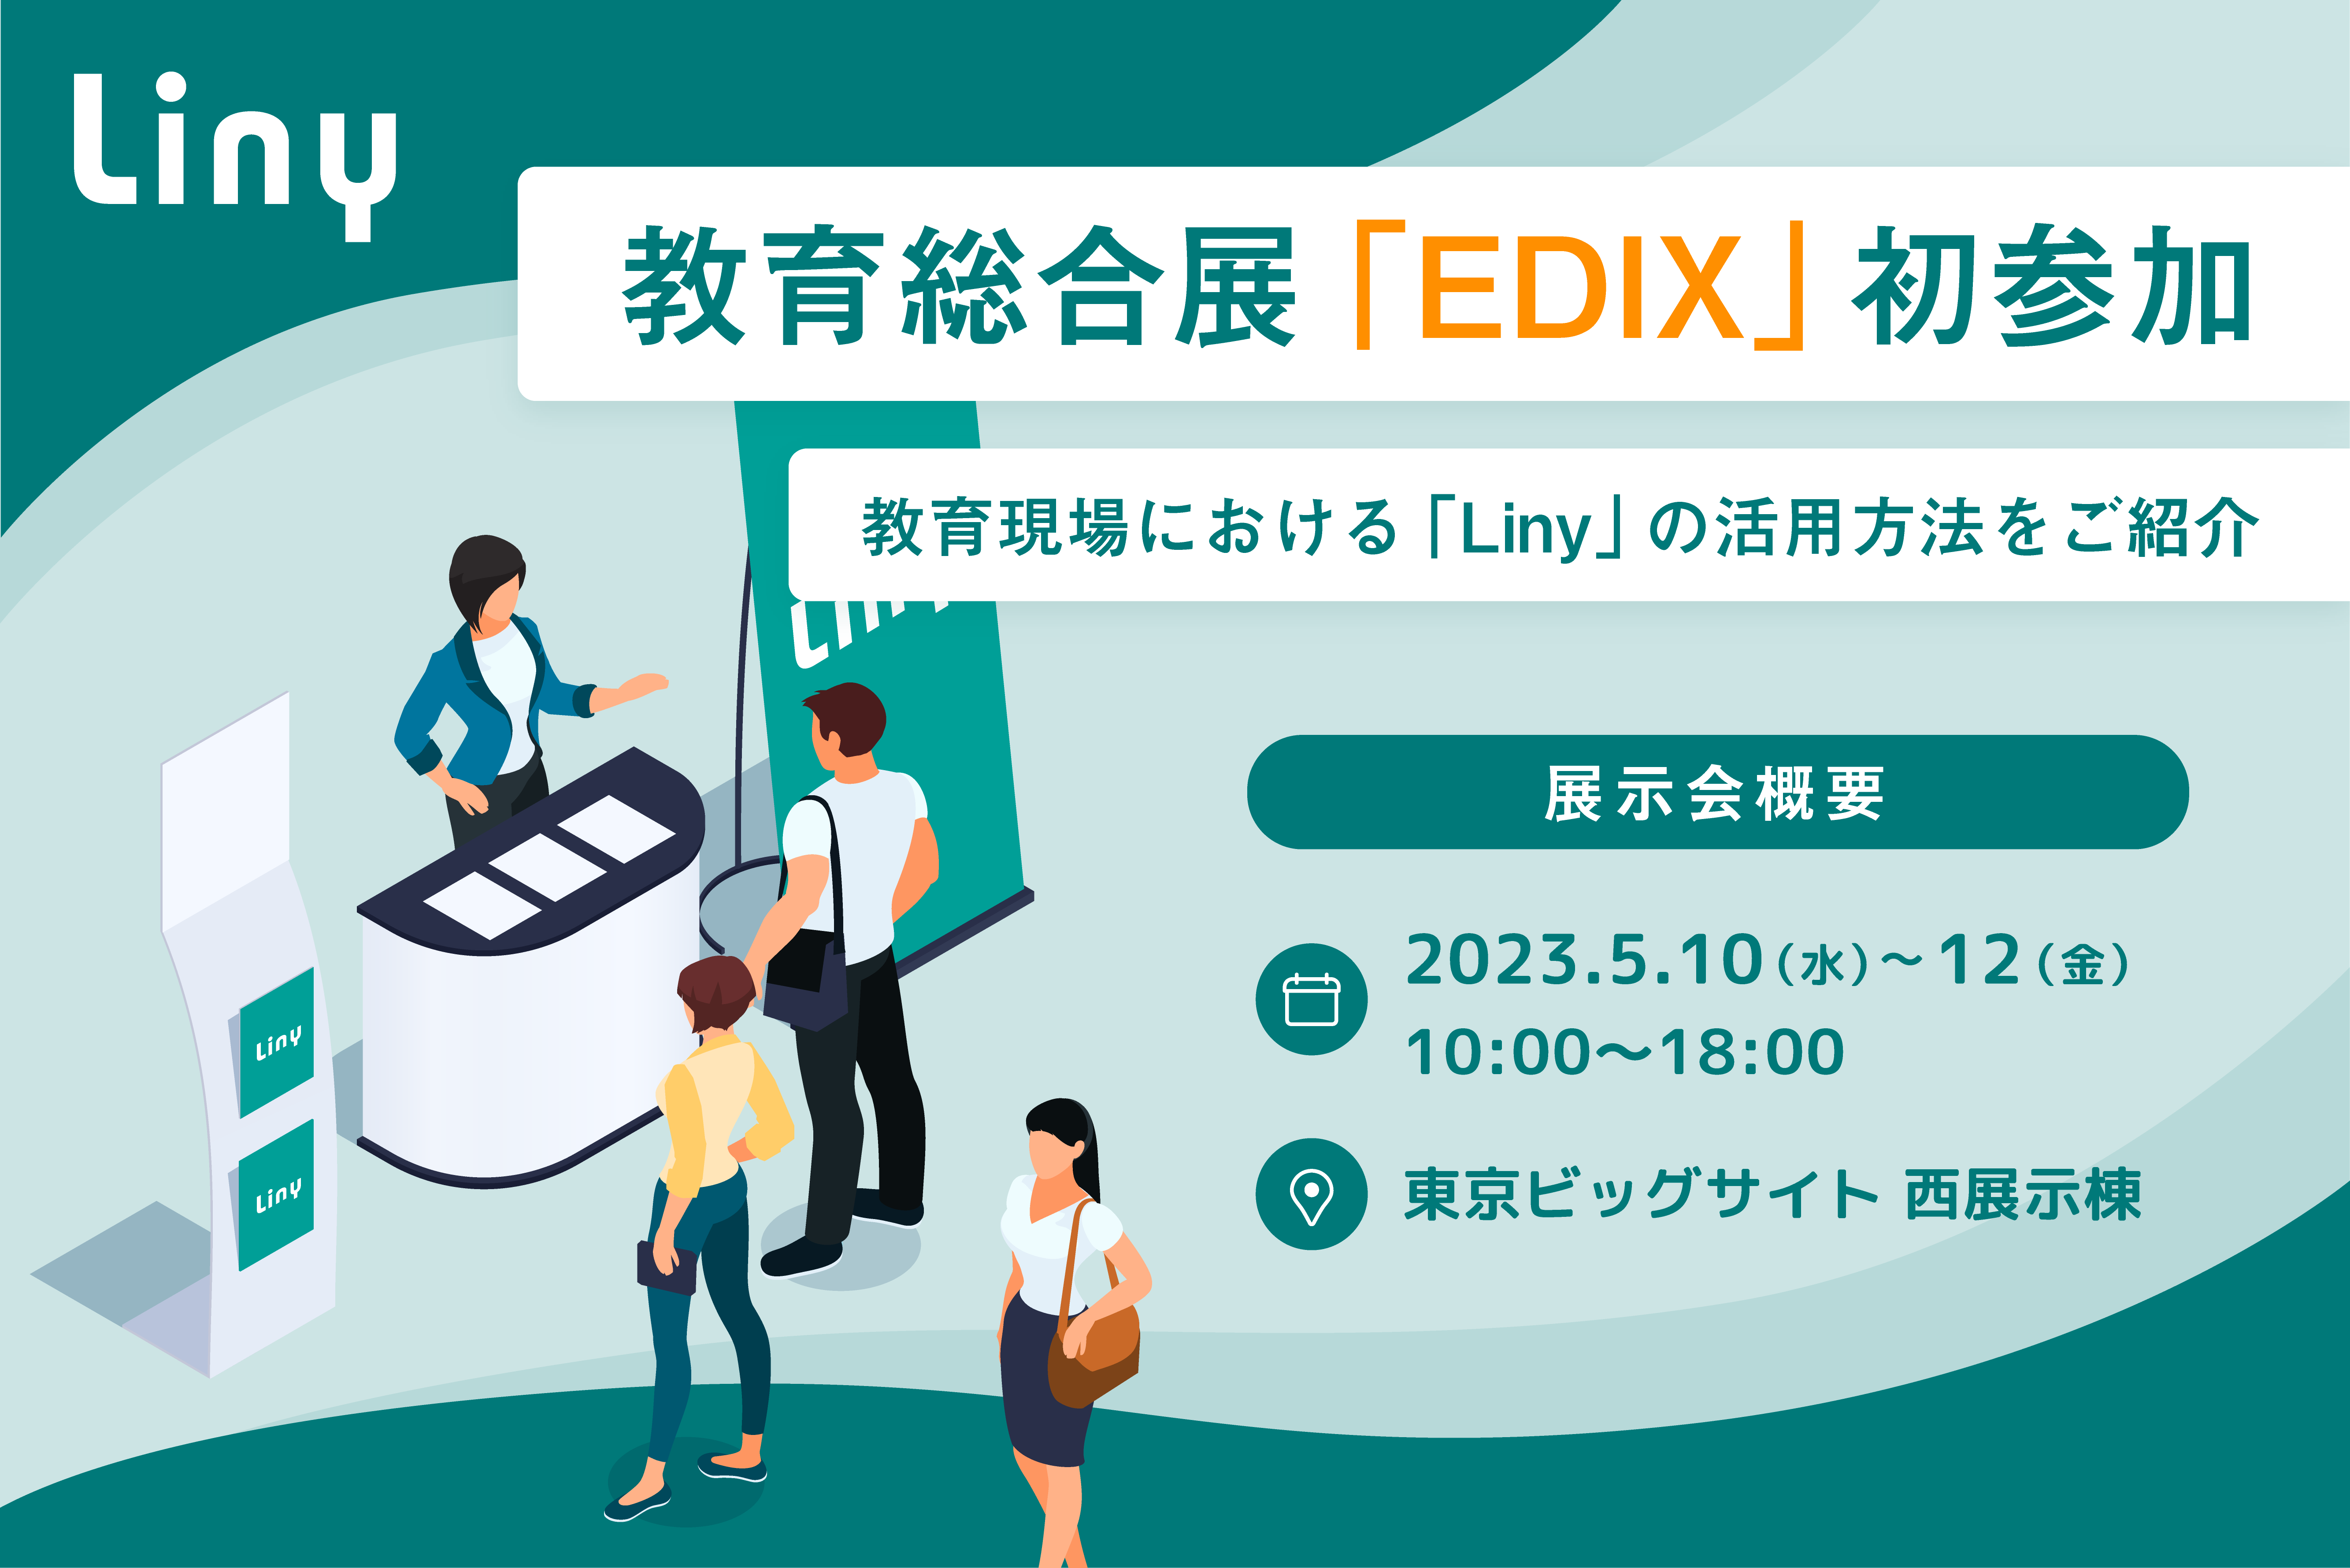 Liny、日本最大の教育総合展「EDIX」初参加